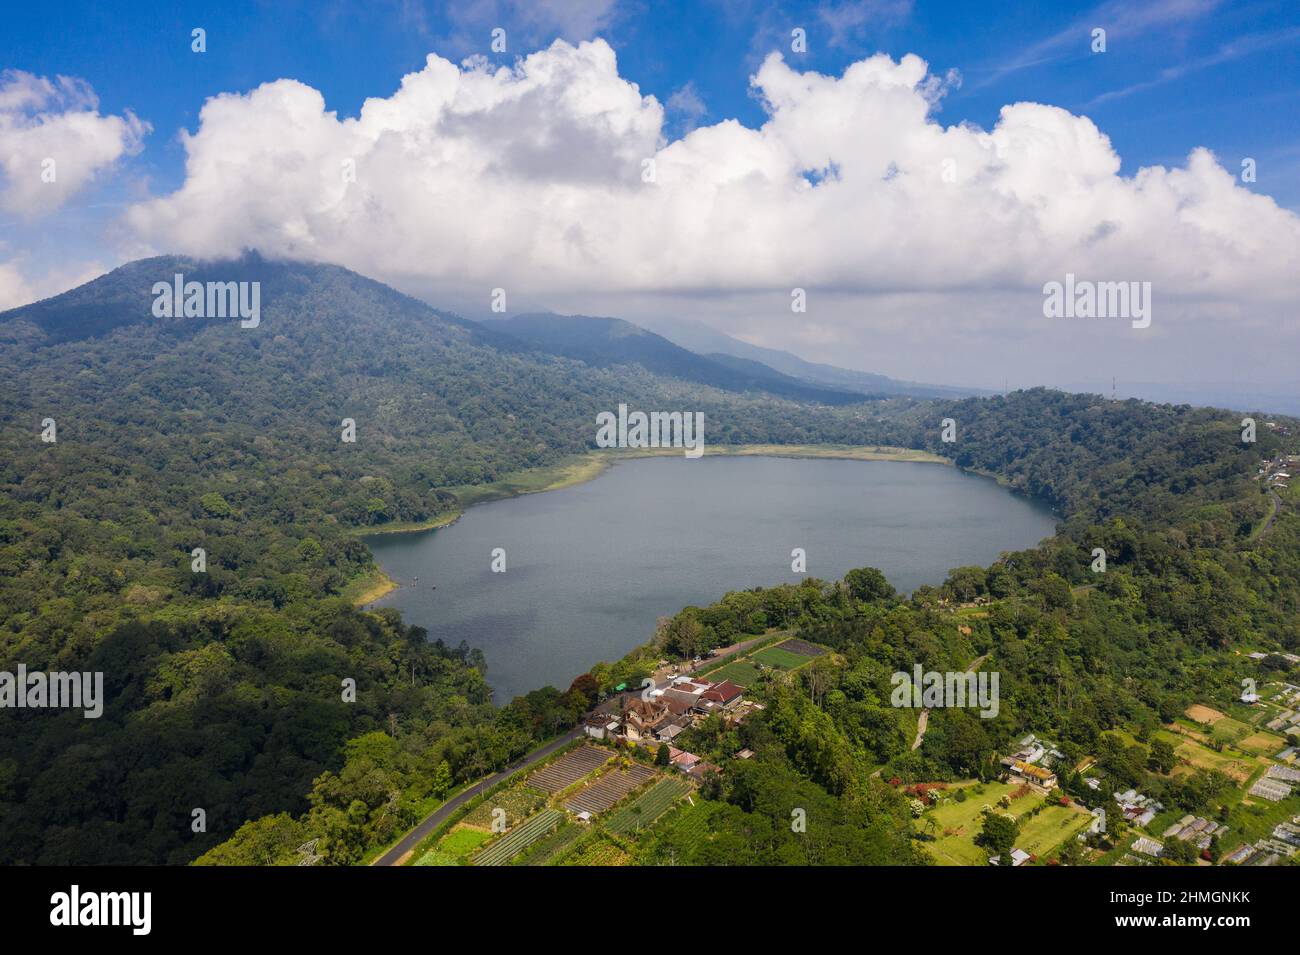 Vista aérea del lago Tamblingan en las tierras altas de Bali en Indonesia en un día soleado en el sudeste asiático Foto de stock